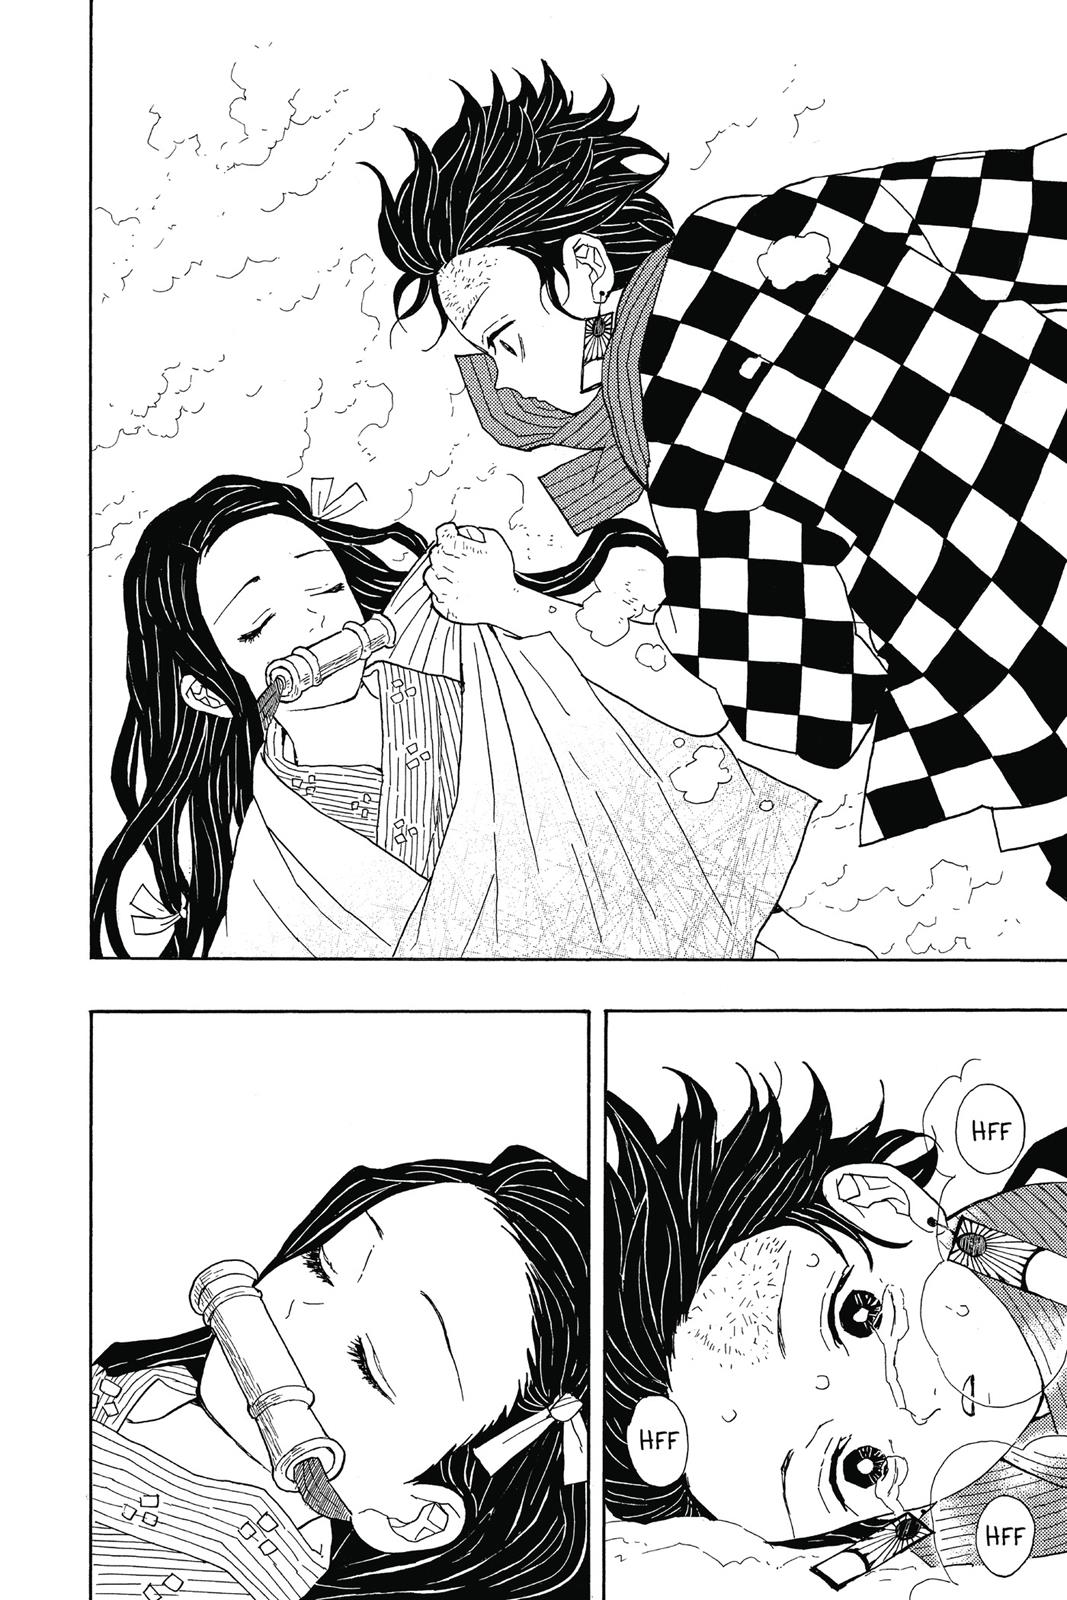 Demon Slayer Manga Manga Chapter - 1 - image 36